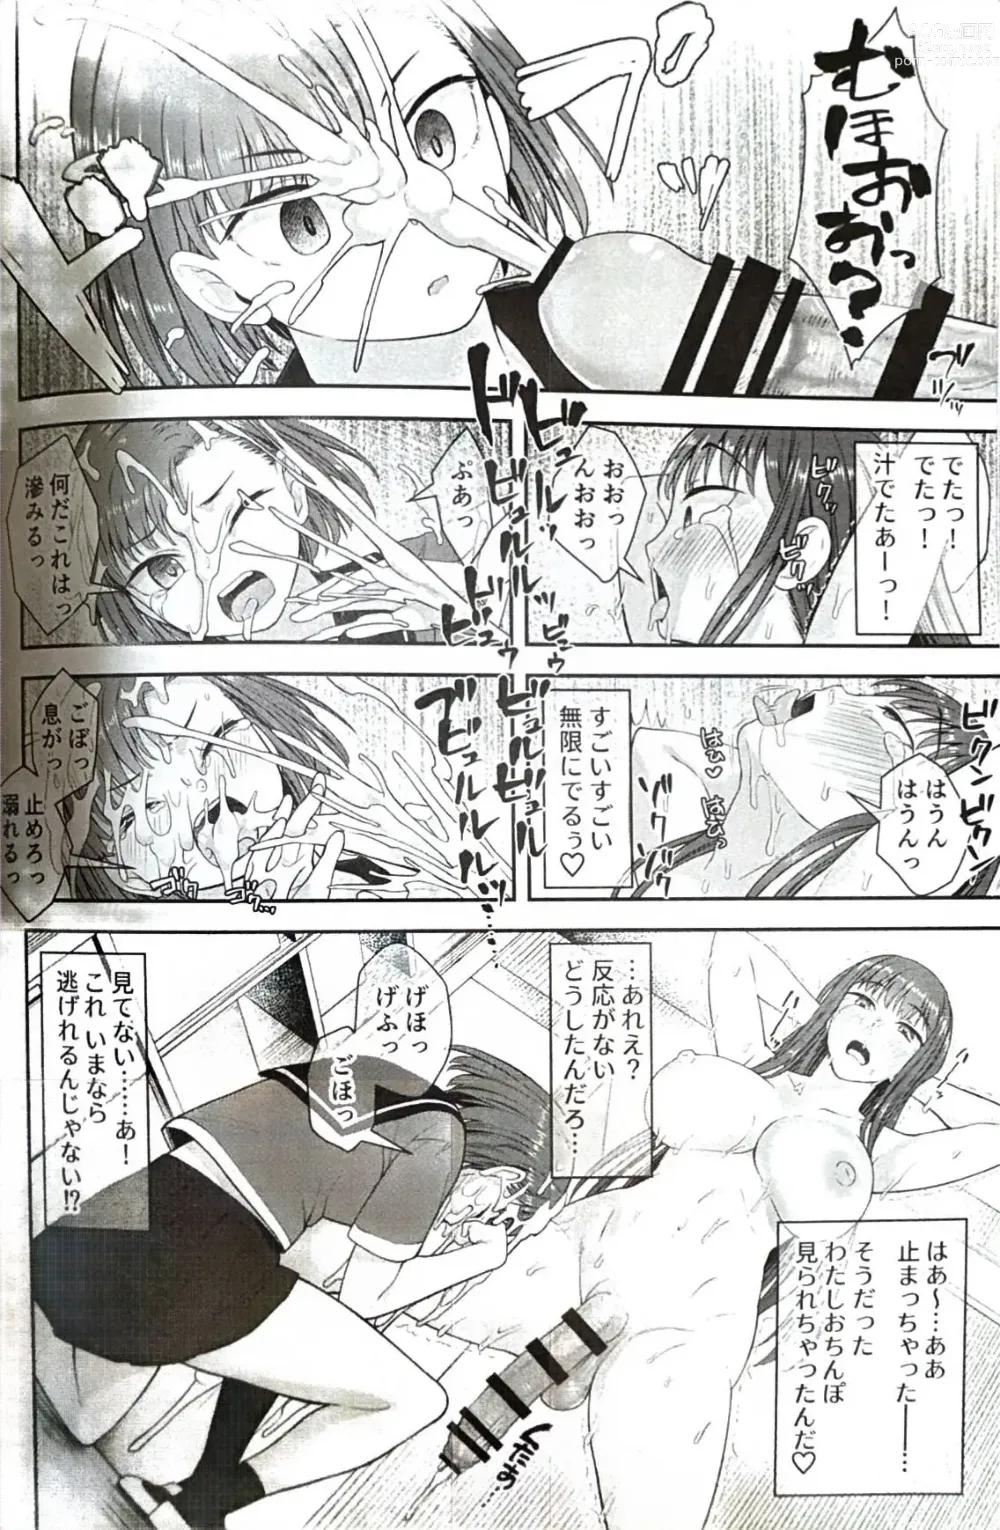 Page 23 of doujinshi Danseiki Roshutsu Jidori-han no Shoutai wa Kanojo dake ga Shitteiru.